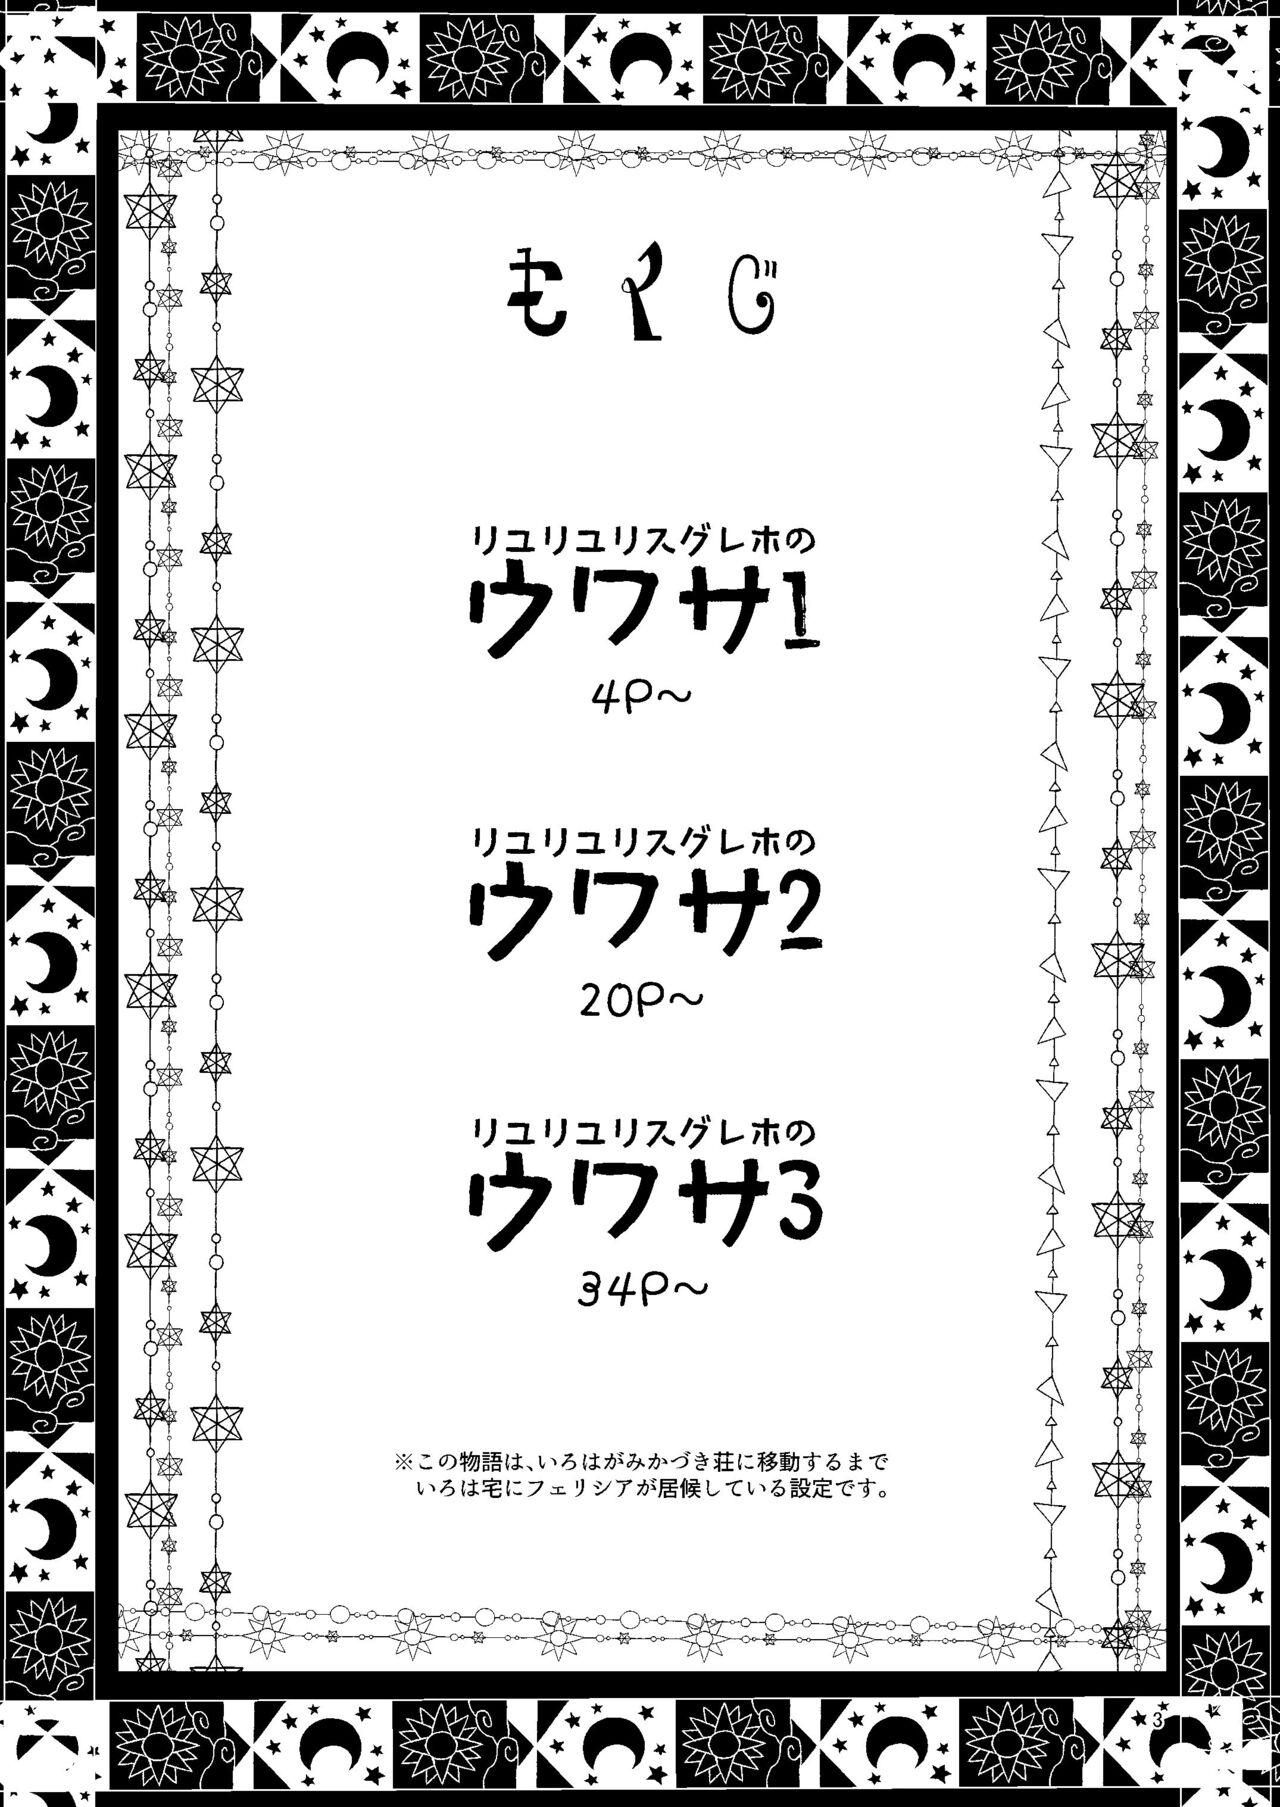 Thong Riyuriyu Risugureho no Uwasa 3 - Puella magi madoka magica side story magia record Stepfamily - Page 3